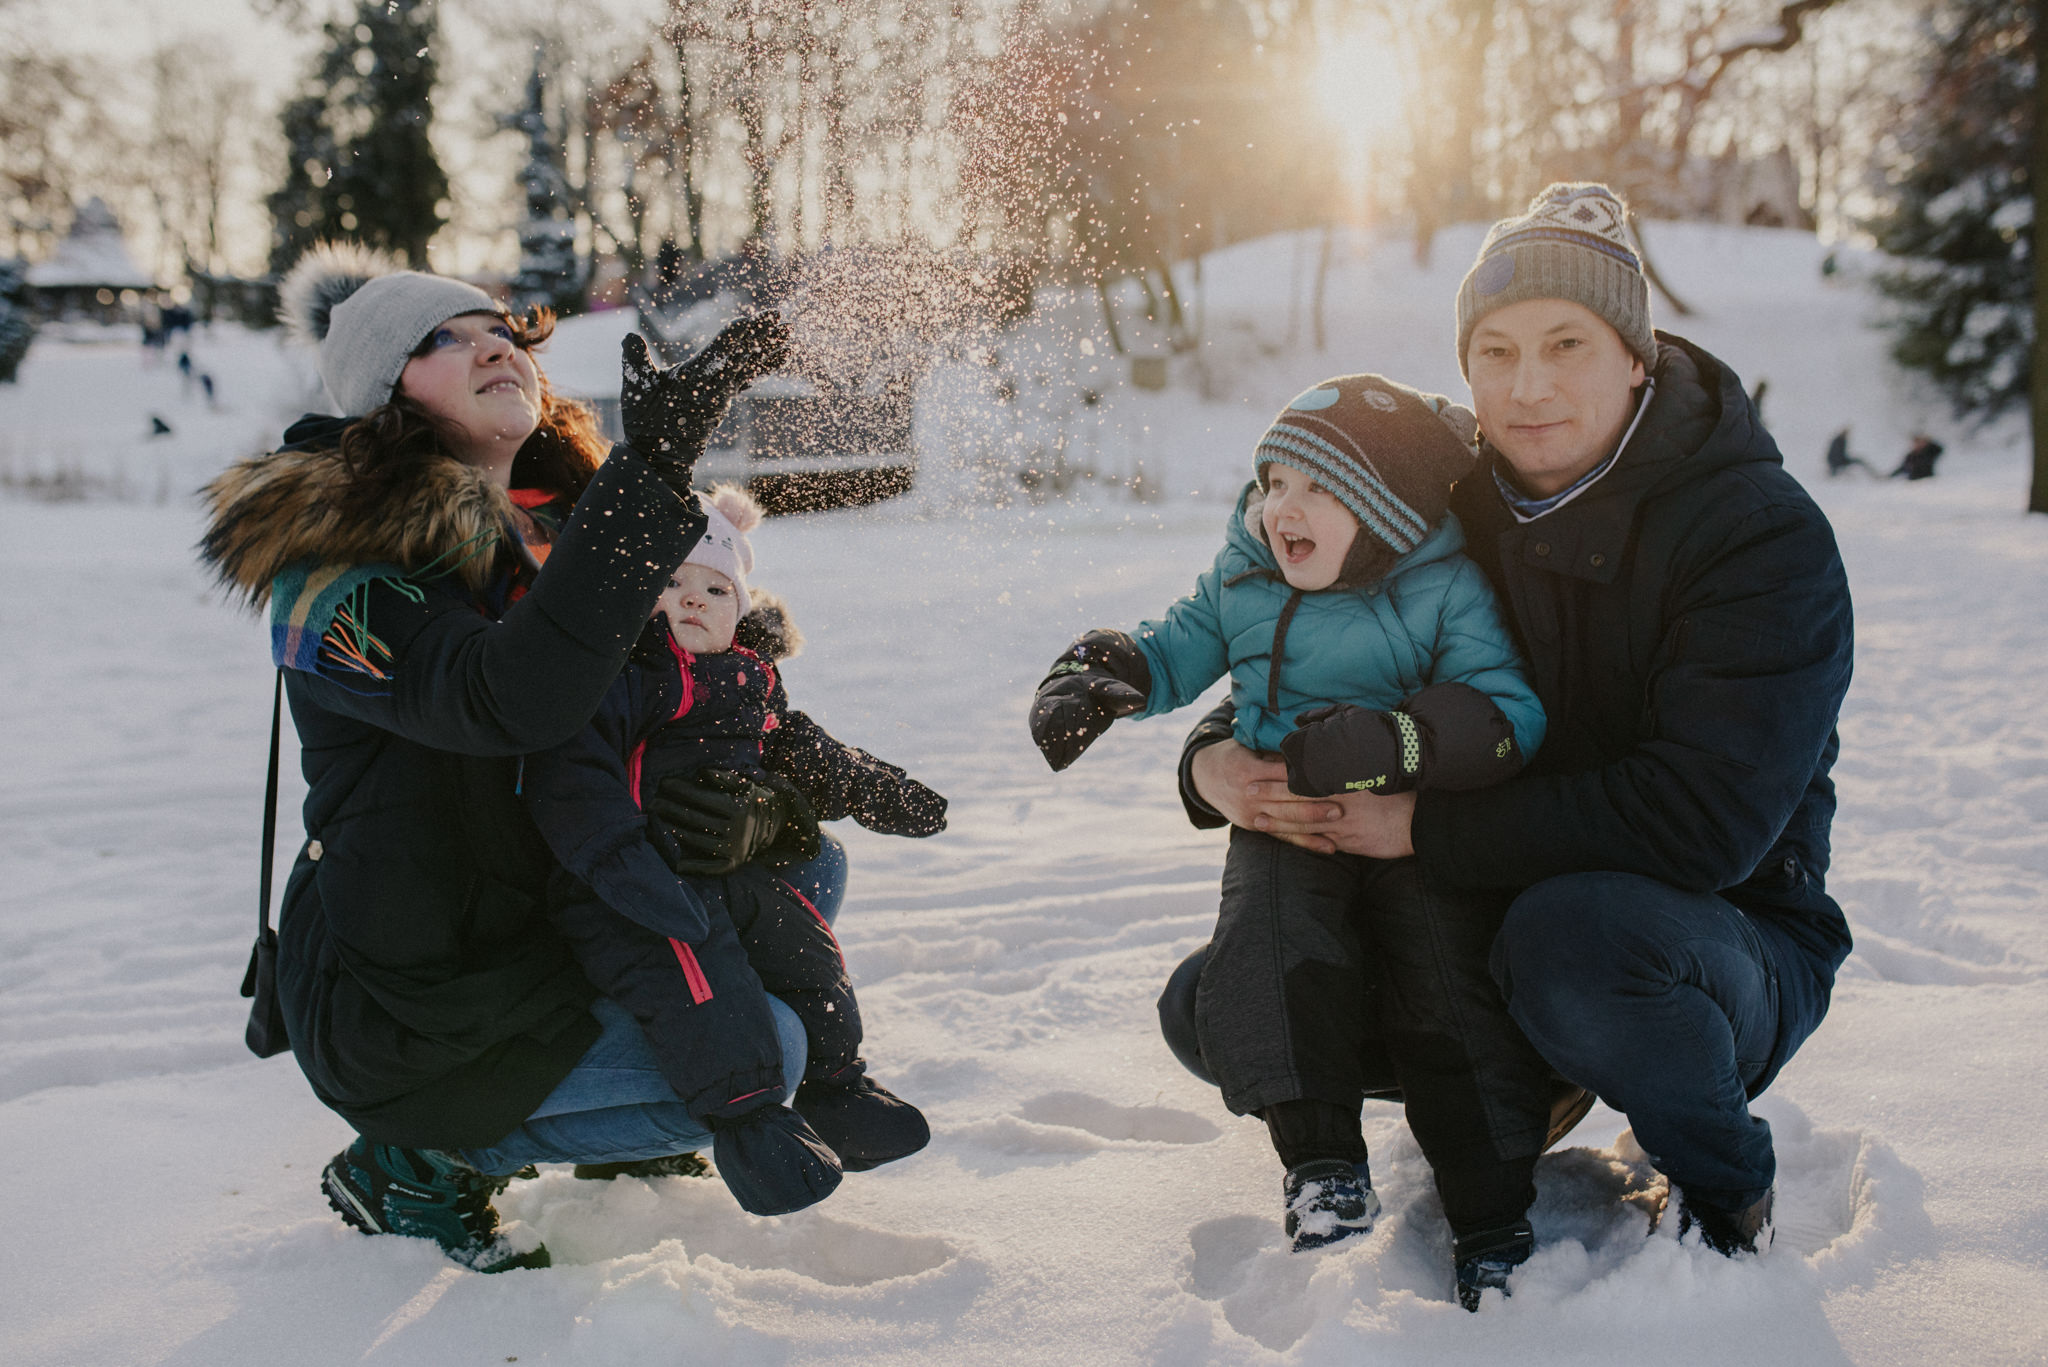 Zimowa sesja rodzinna | Fotografia rodzinna Częstochowa